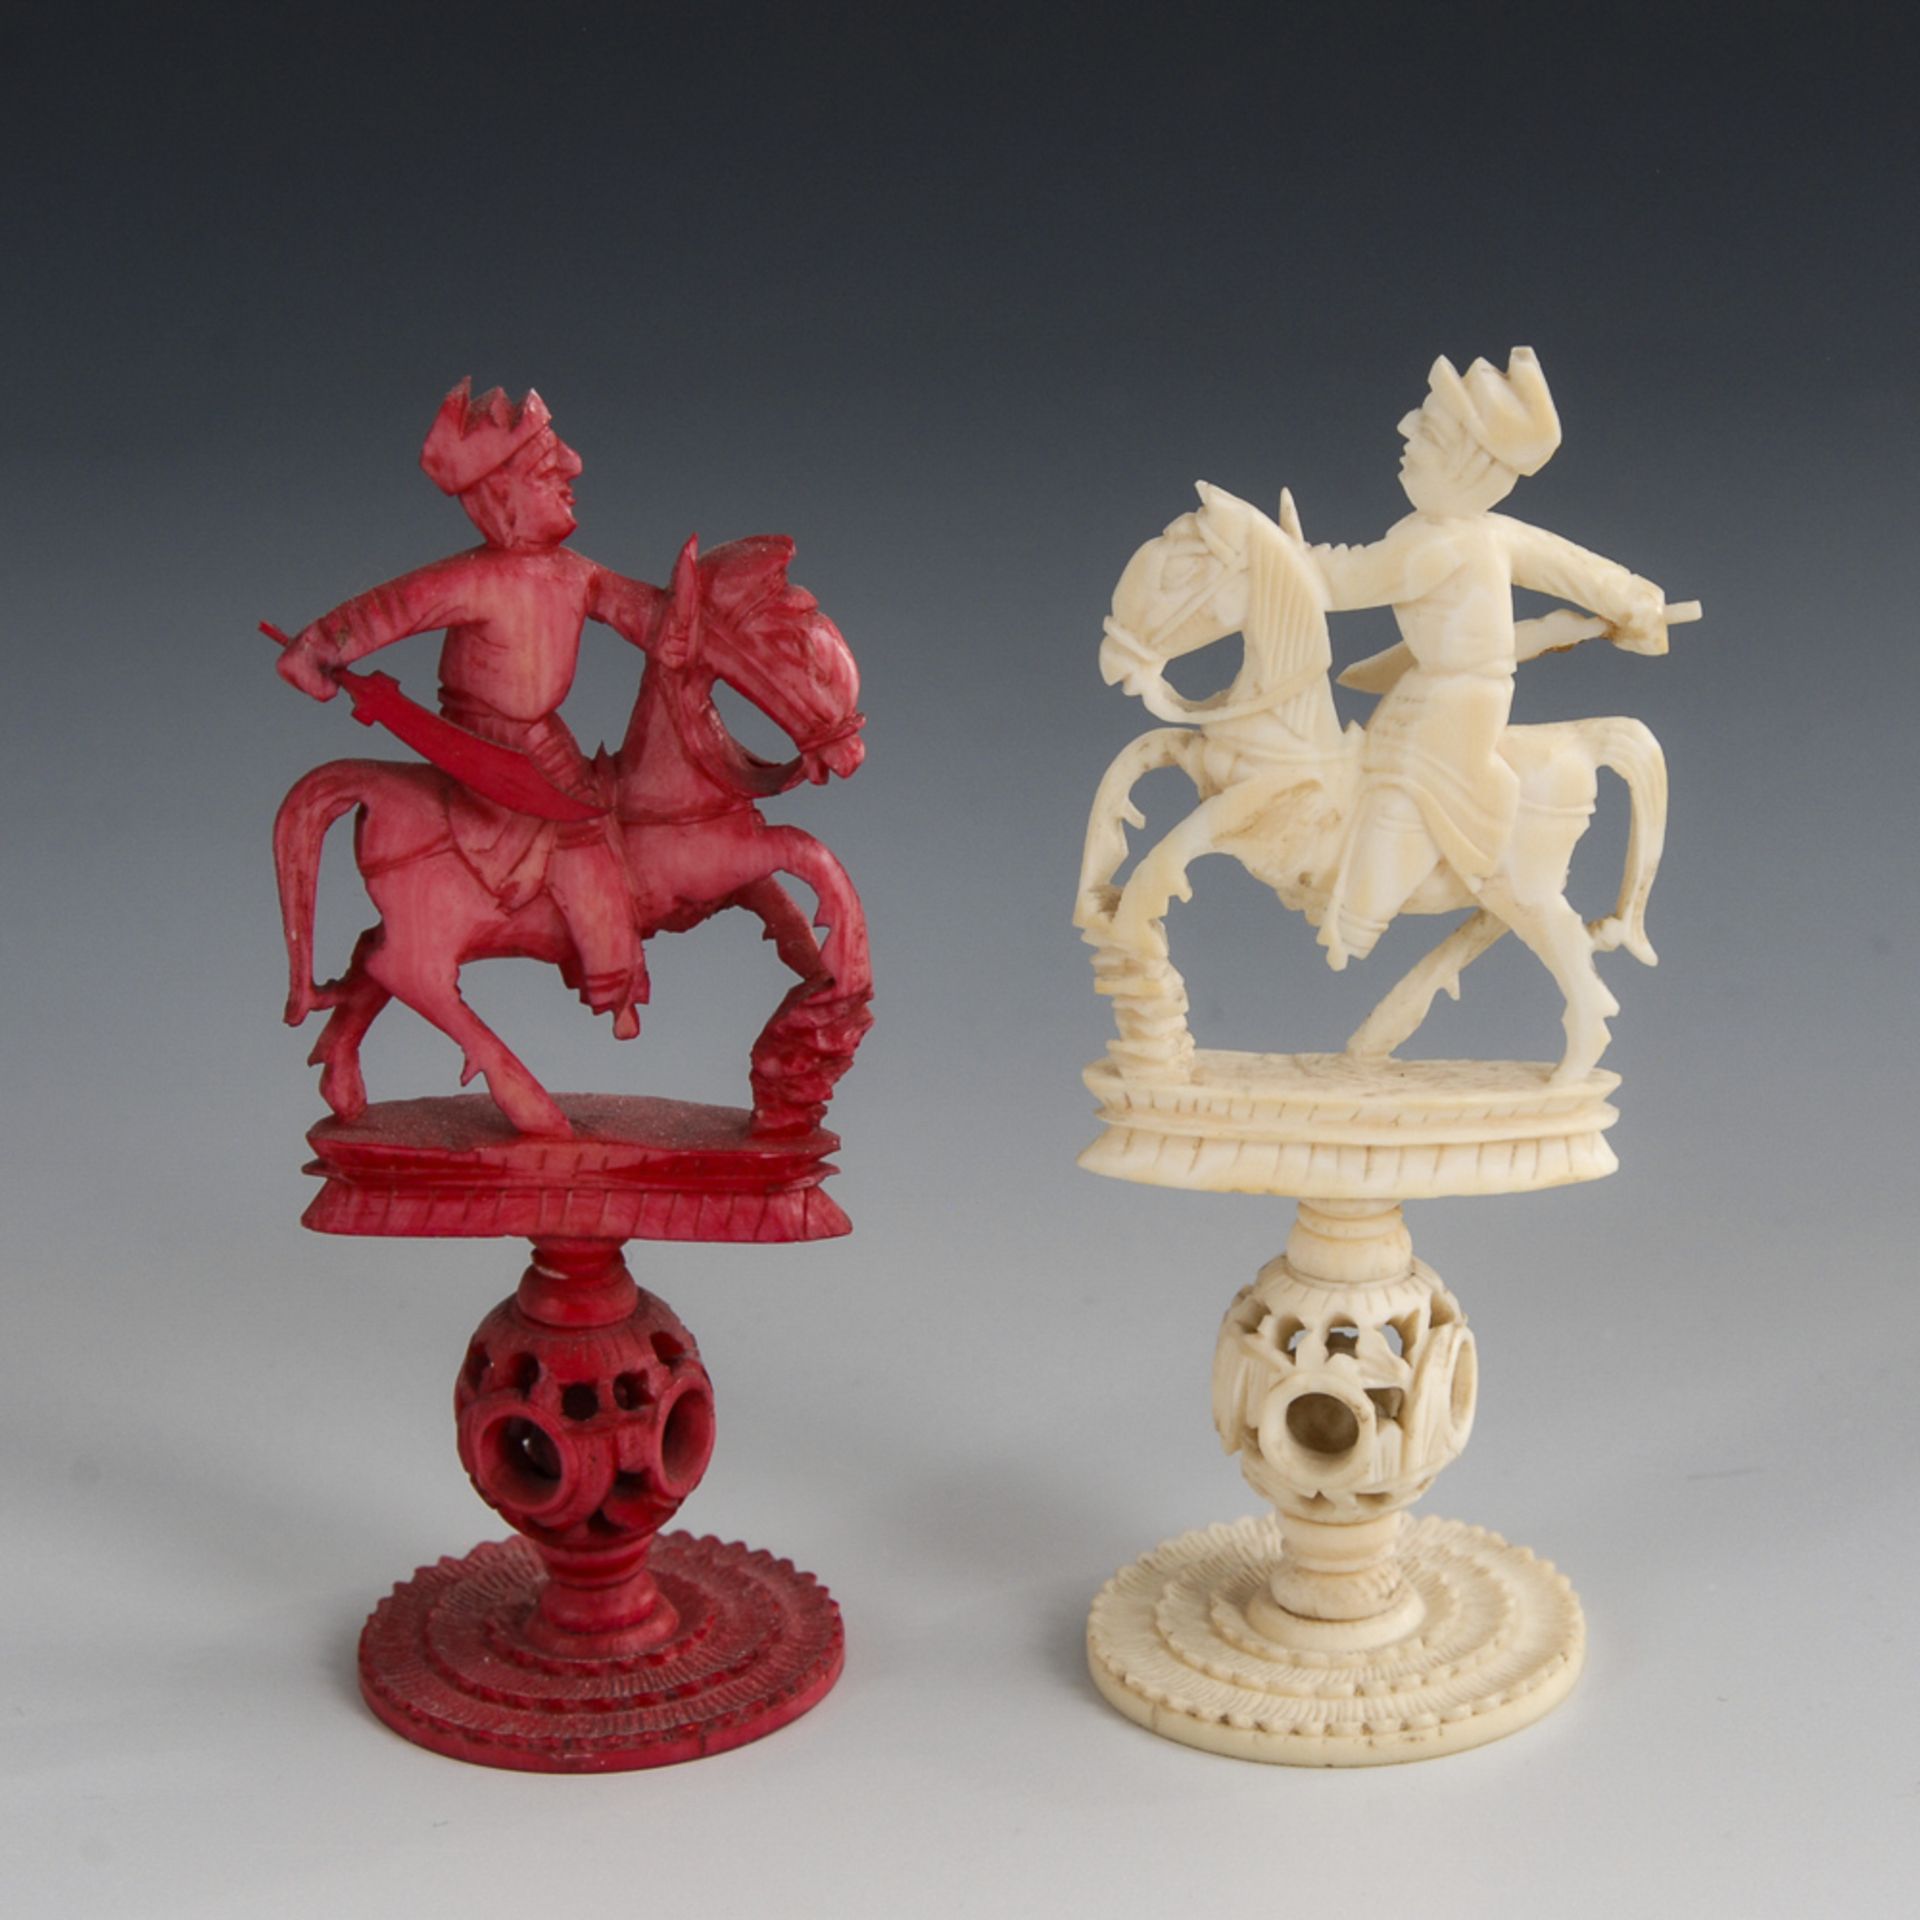 Schachspielfiguren - Elfenbein.China, um 1870, teils rot eingefärbt. Vollständig. Max. H 15 cm. - Bild 4 aus 4